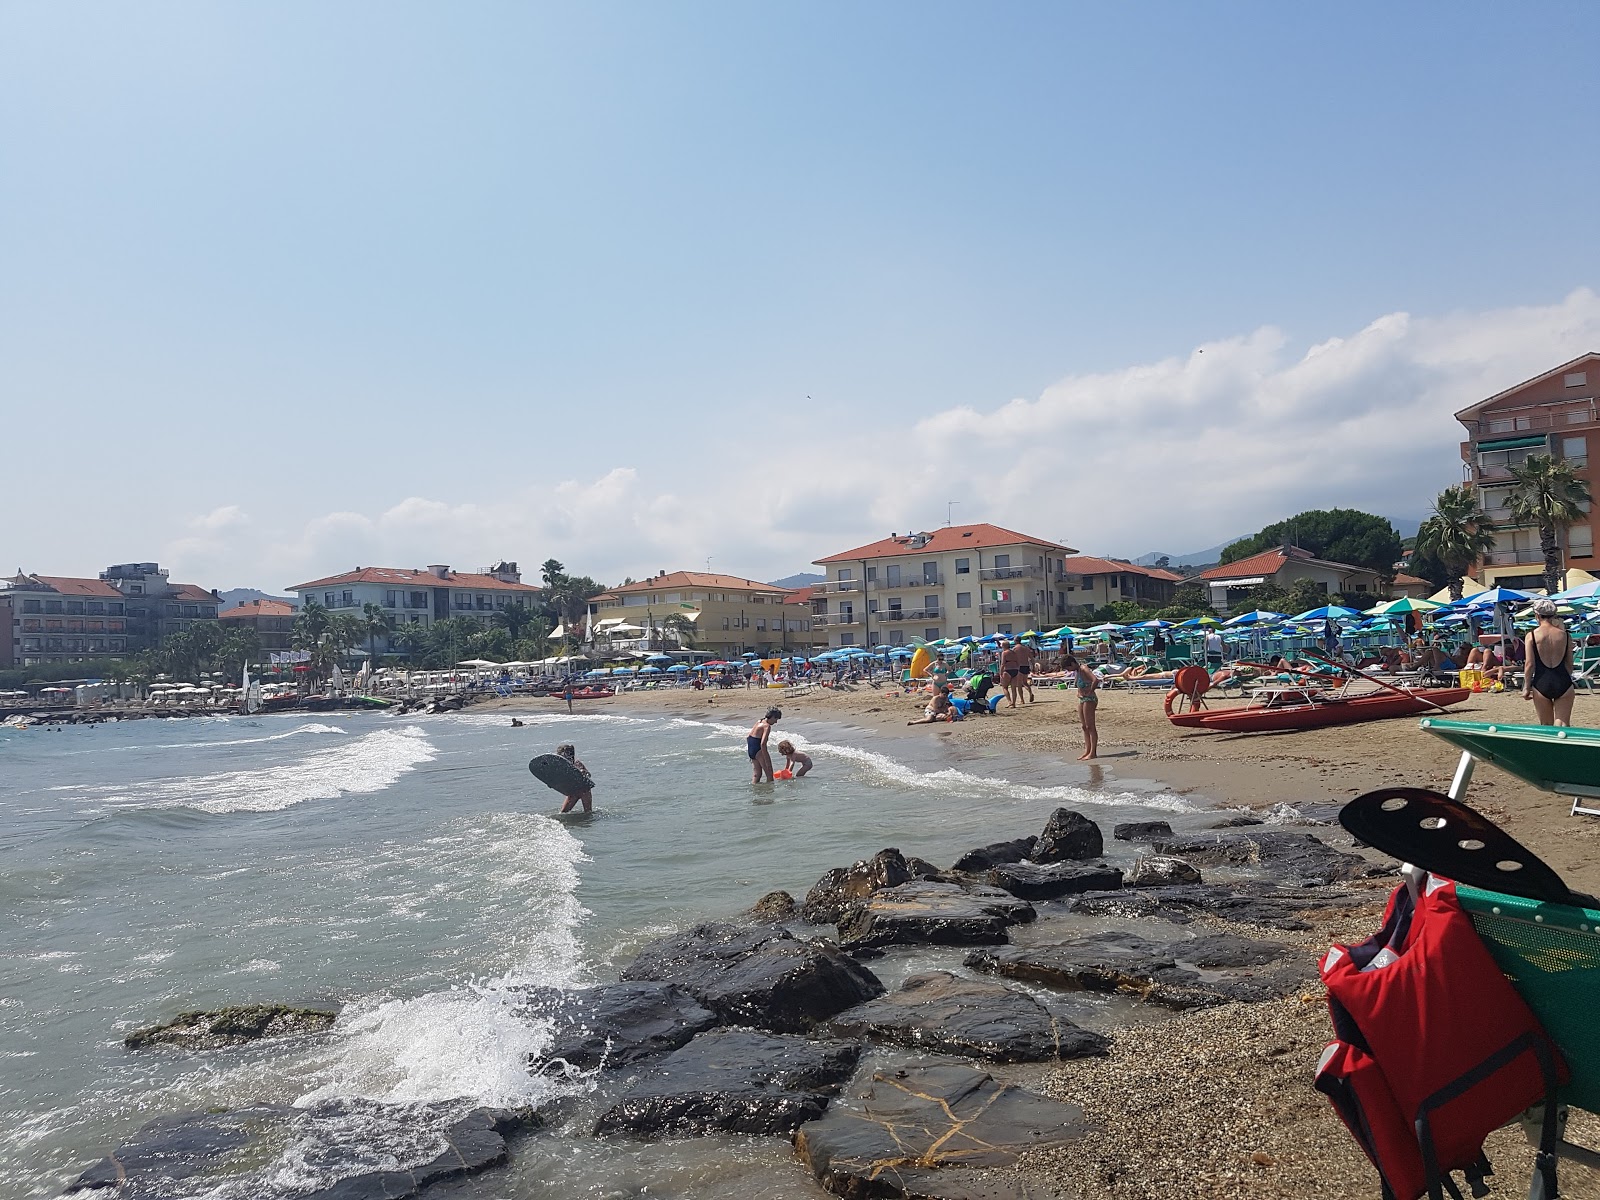 Fotografie cu Diano Marina beach - locul popular printre cunoscătorii de relaxare